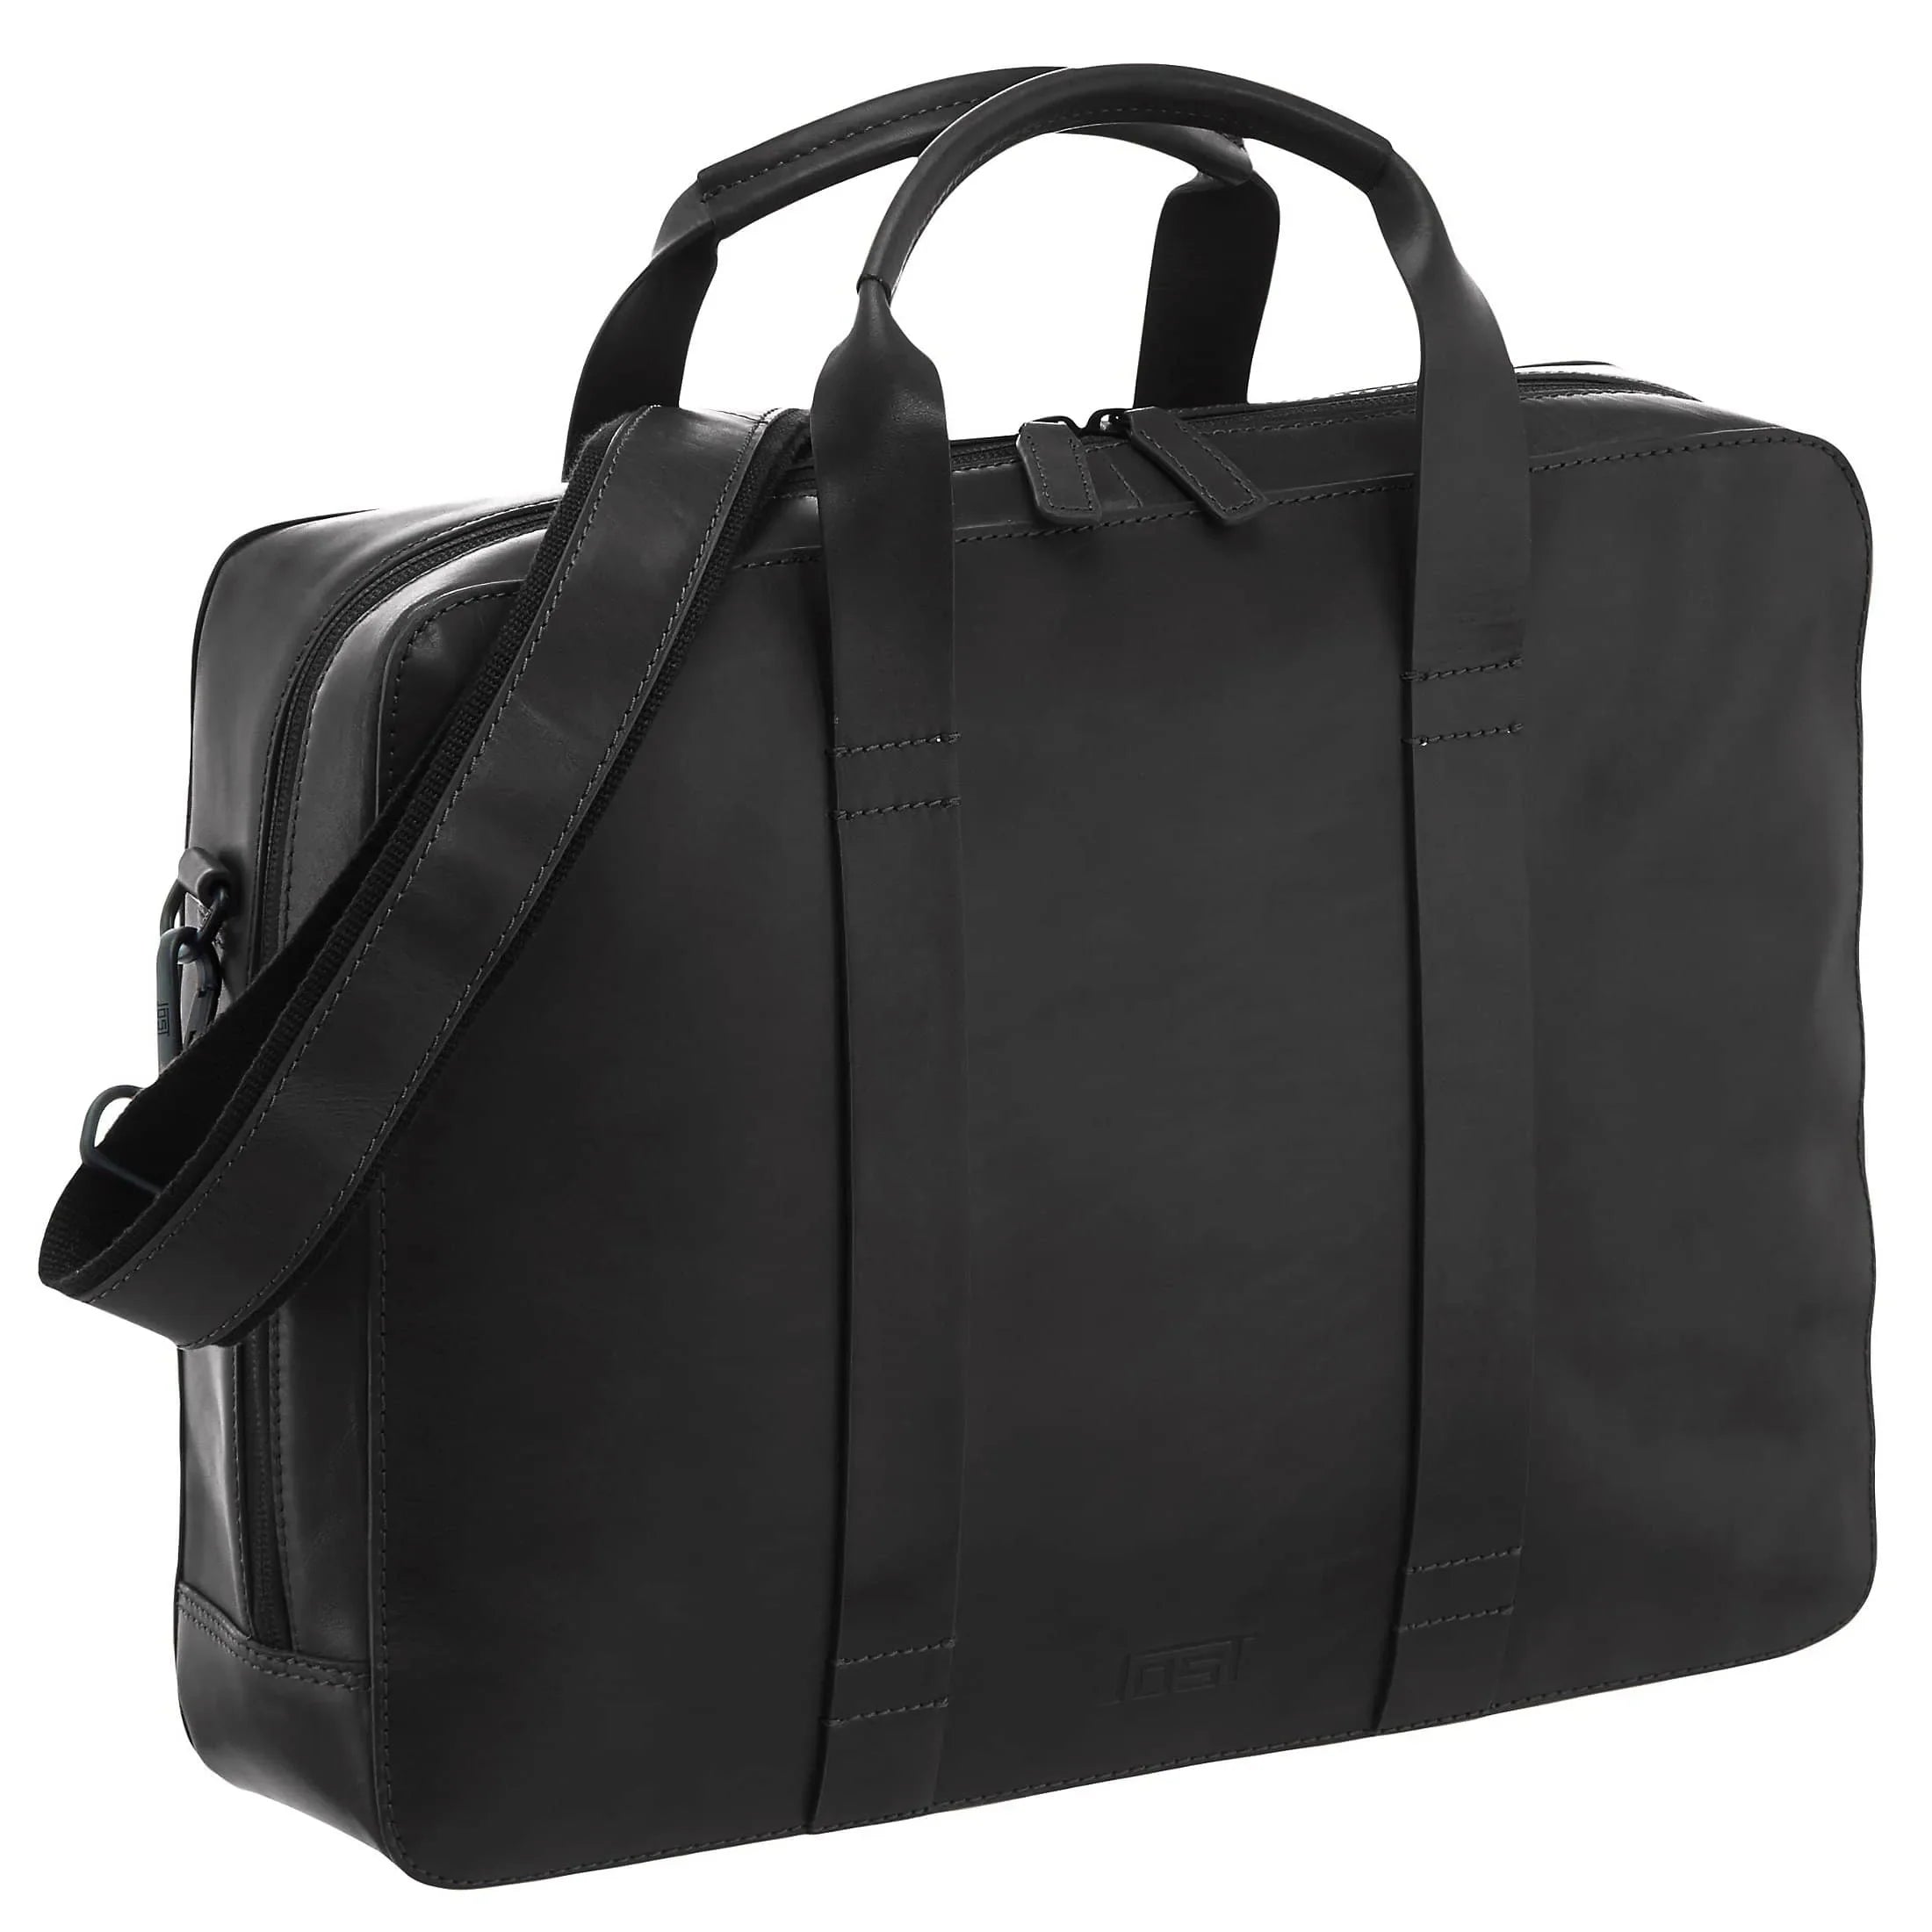 Jost Aarhus business bag 40 cm - black